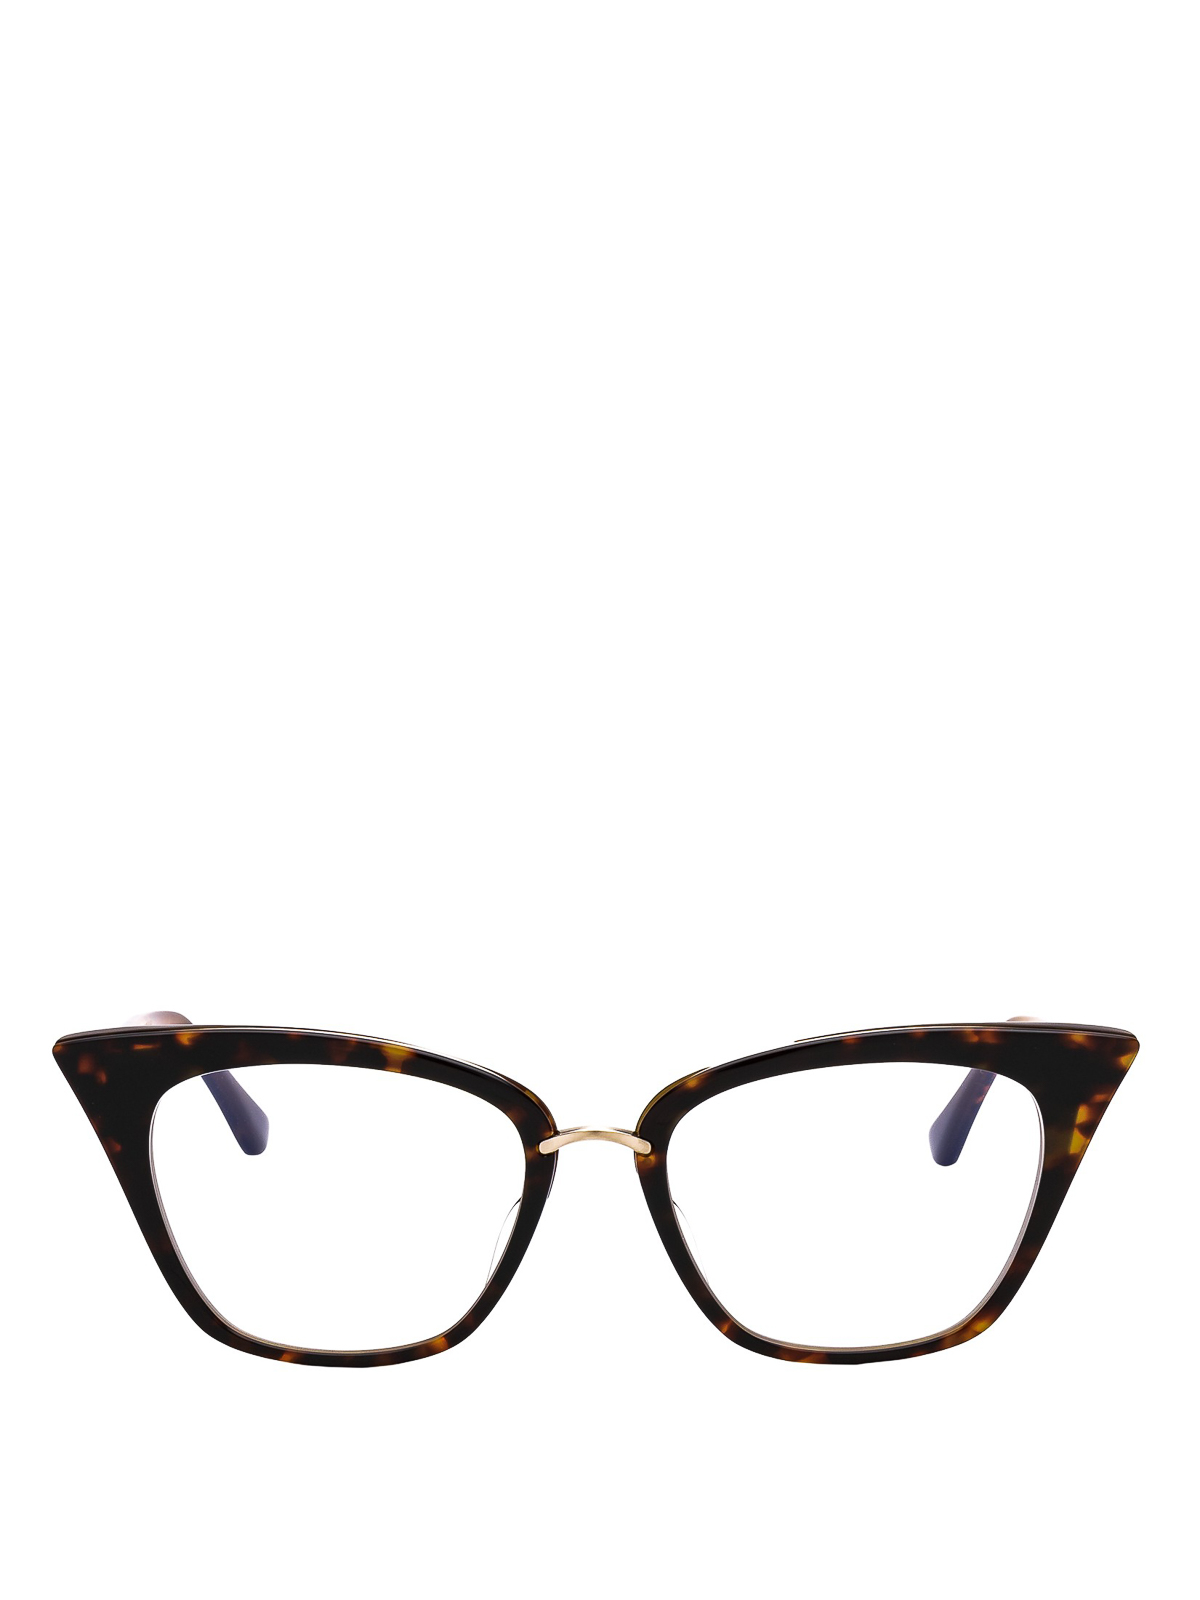 Glasses Dita - Tortoise cat-eye style eyeglasses - DRX3031BTRTGLD51